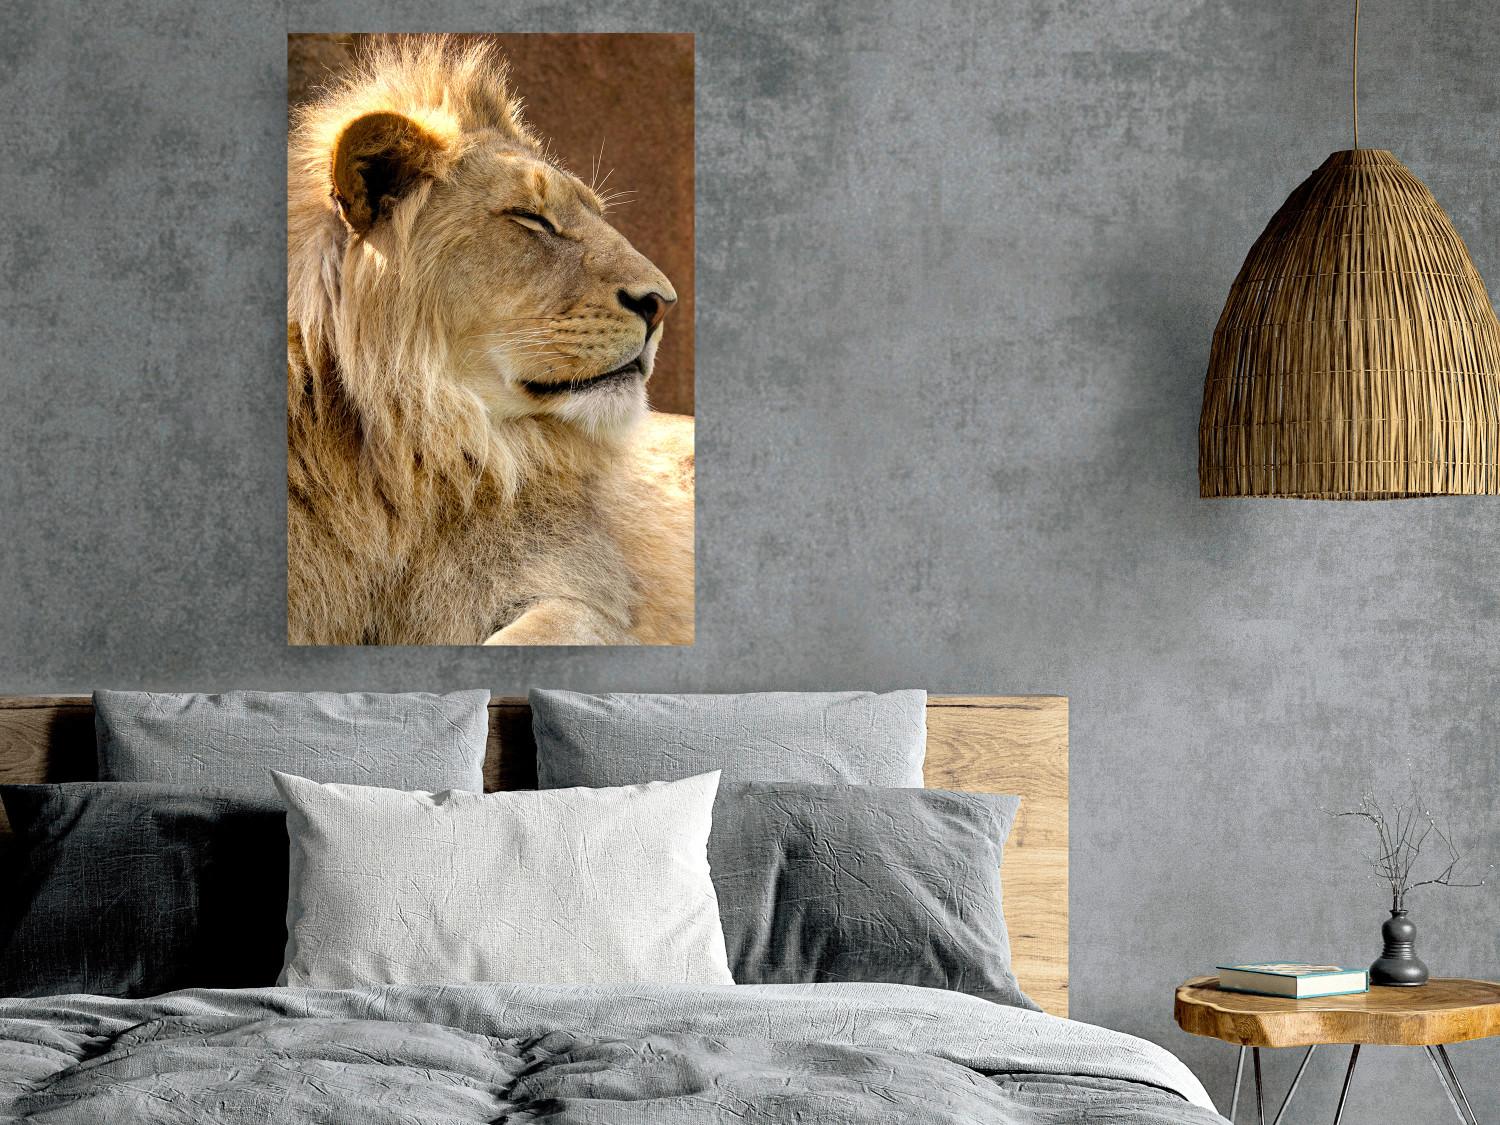 Cartel Siesta soleada - retrato de un león tropical en su entorno natural